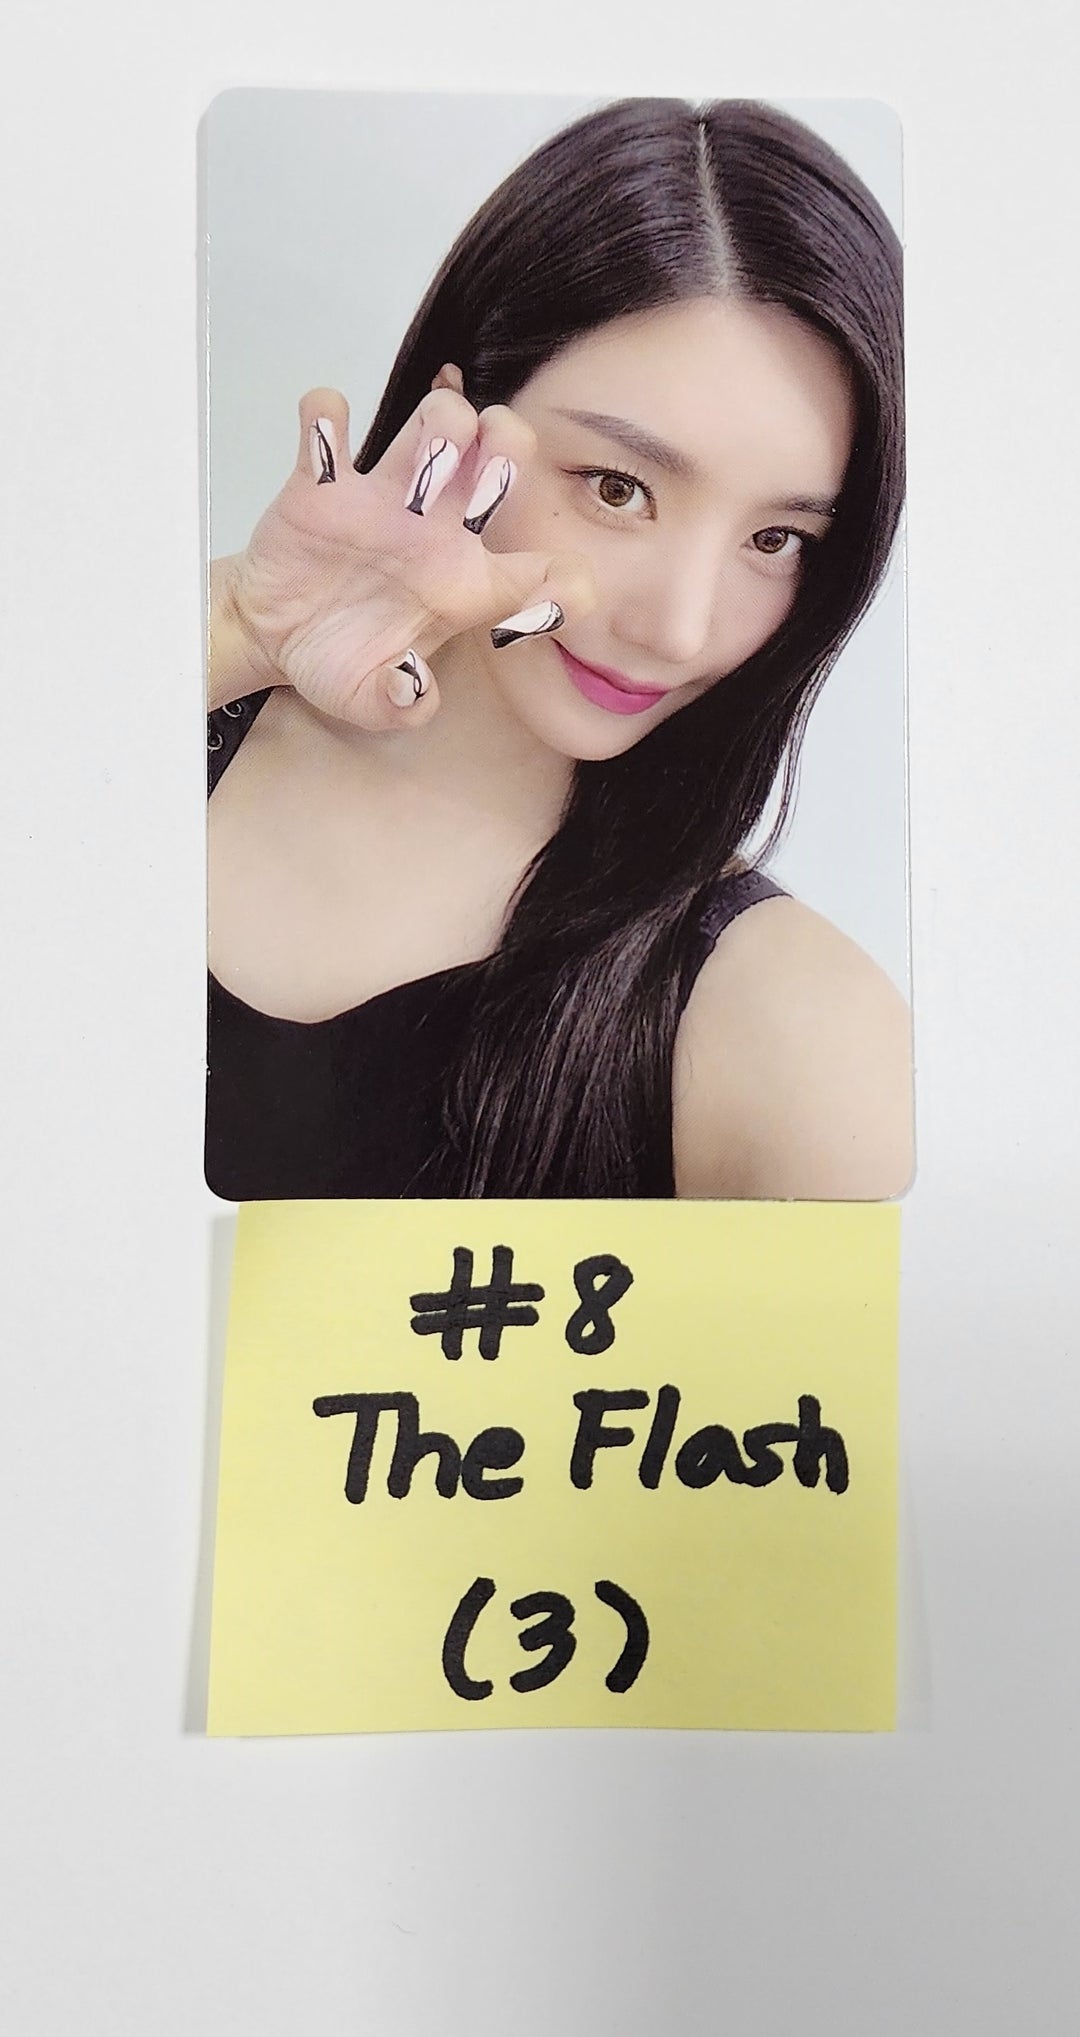 クォン・ウンビ 1st シングル「The Flash」オフィシャルフォトカード [8/11更新]